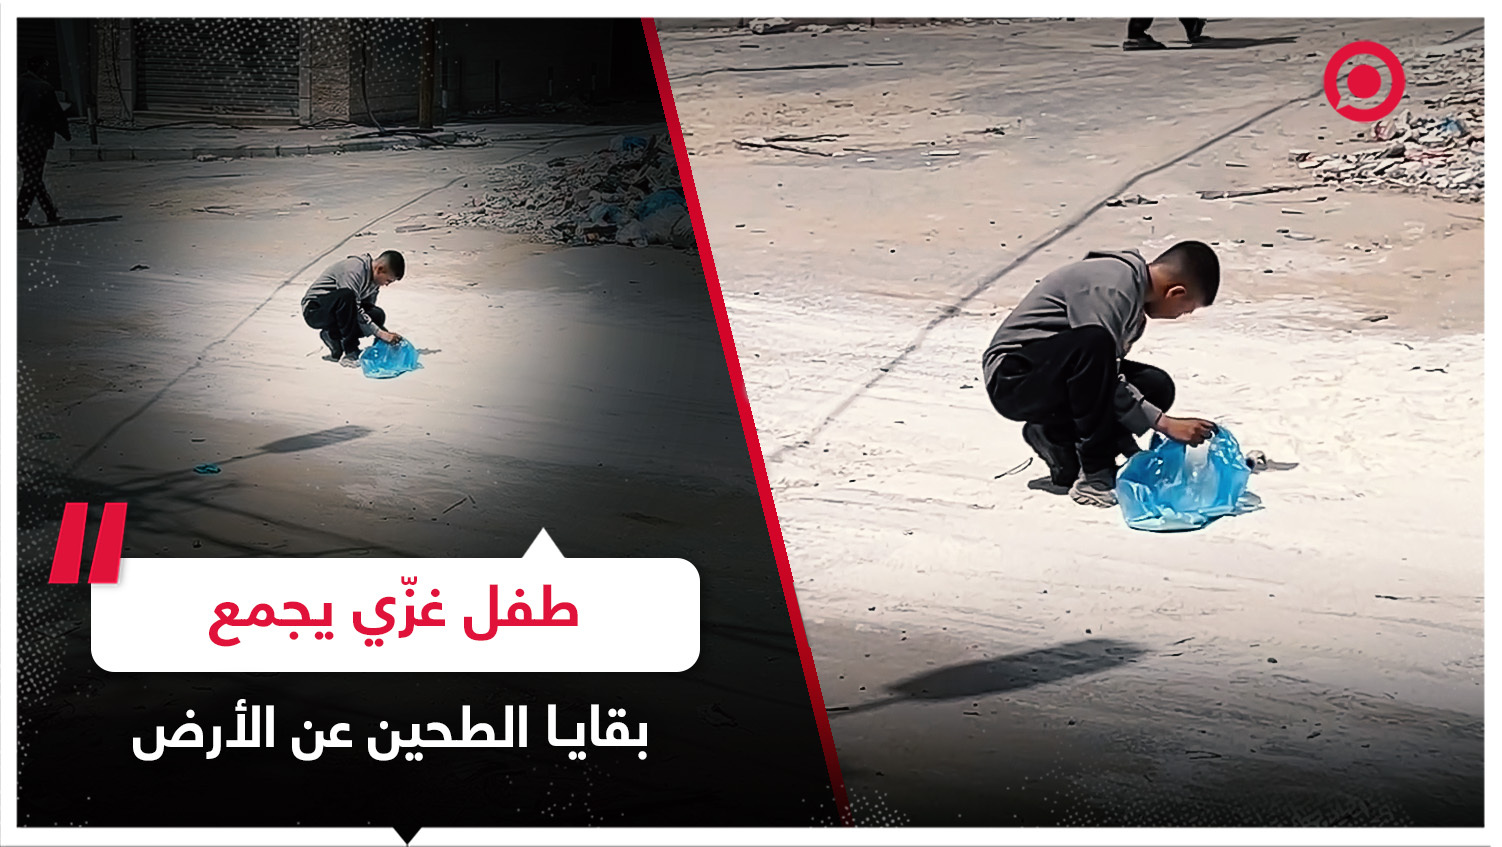 طفل فلسطيني من غزة يجمع بقايا كيس طحين عن الأرض